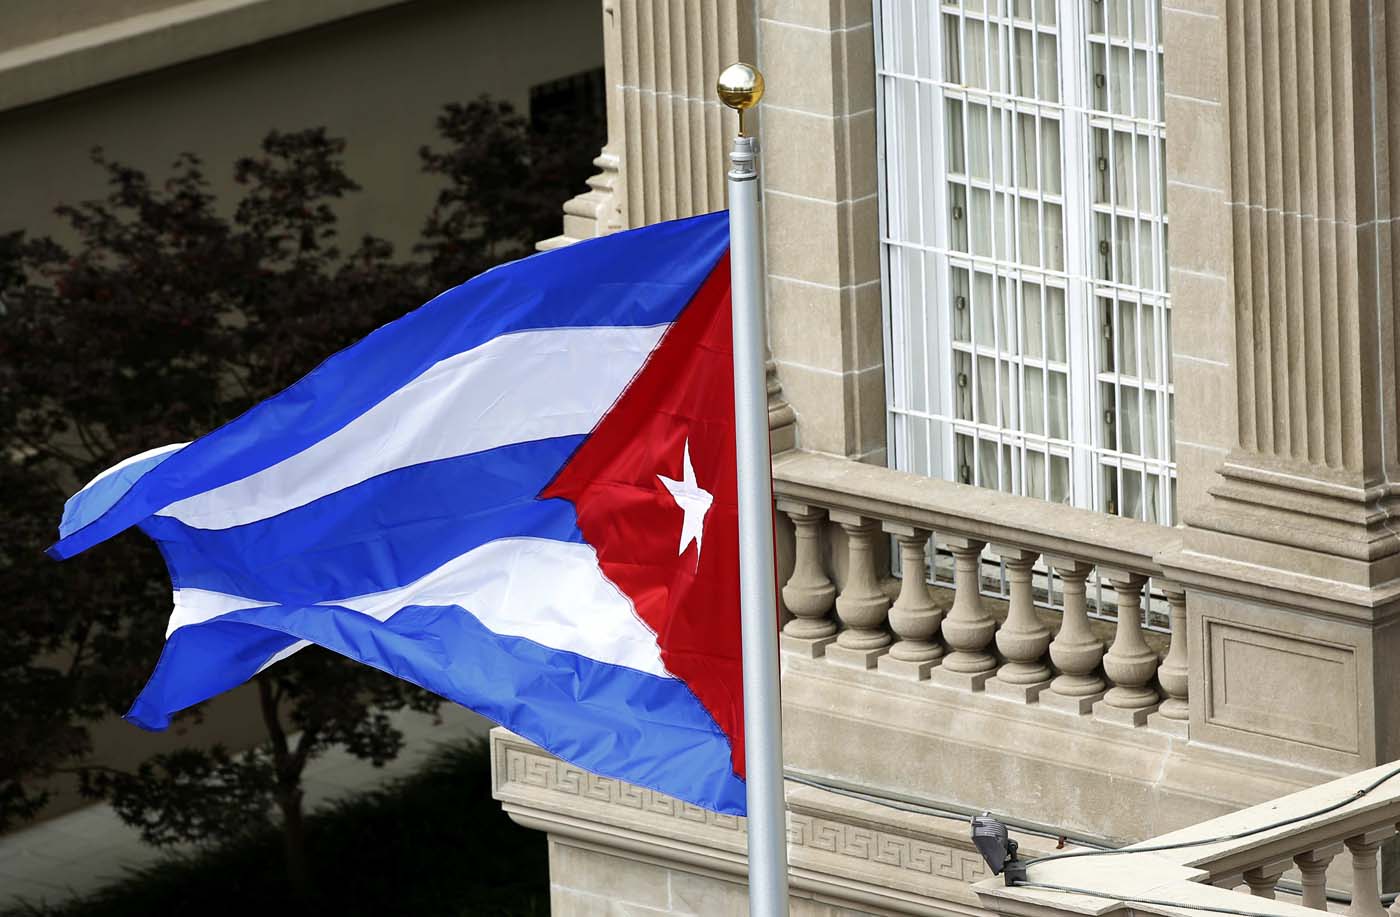 EEUU expulsa a dos diplomáticos cubanos por “incidentes” en La Habana